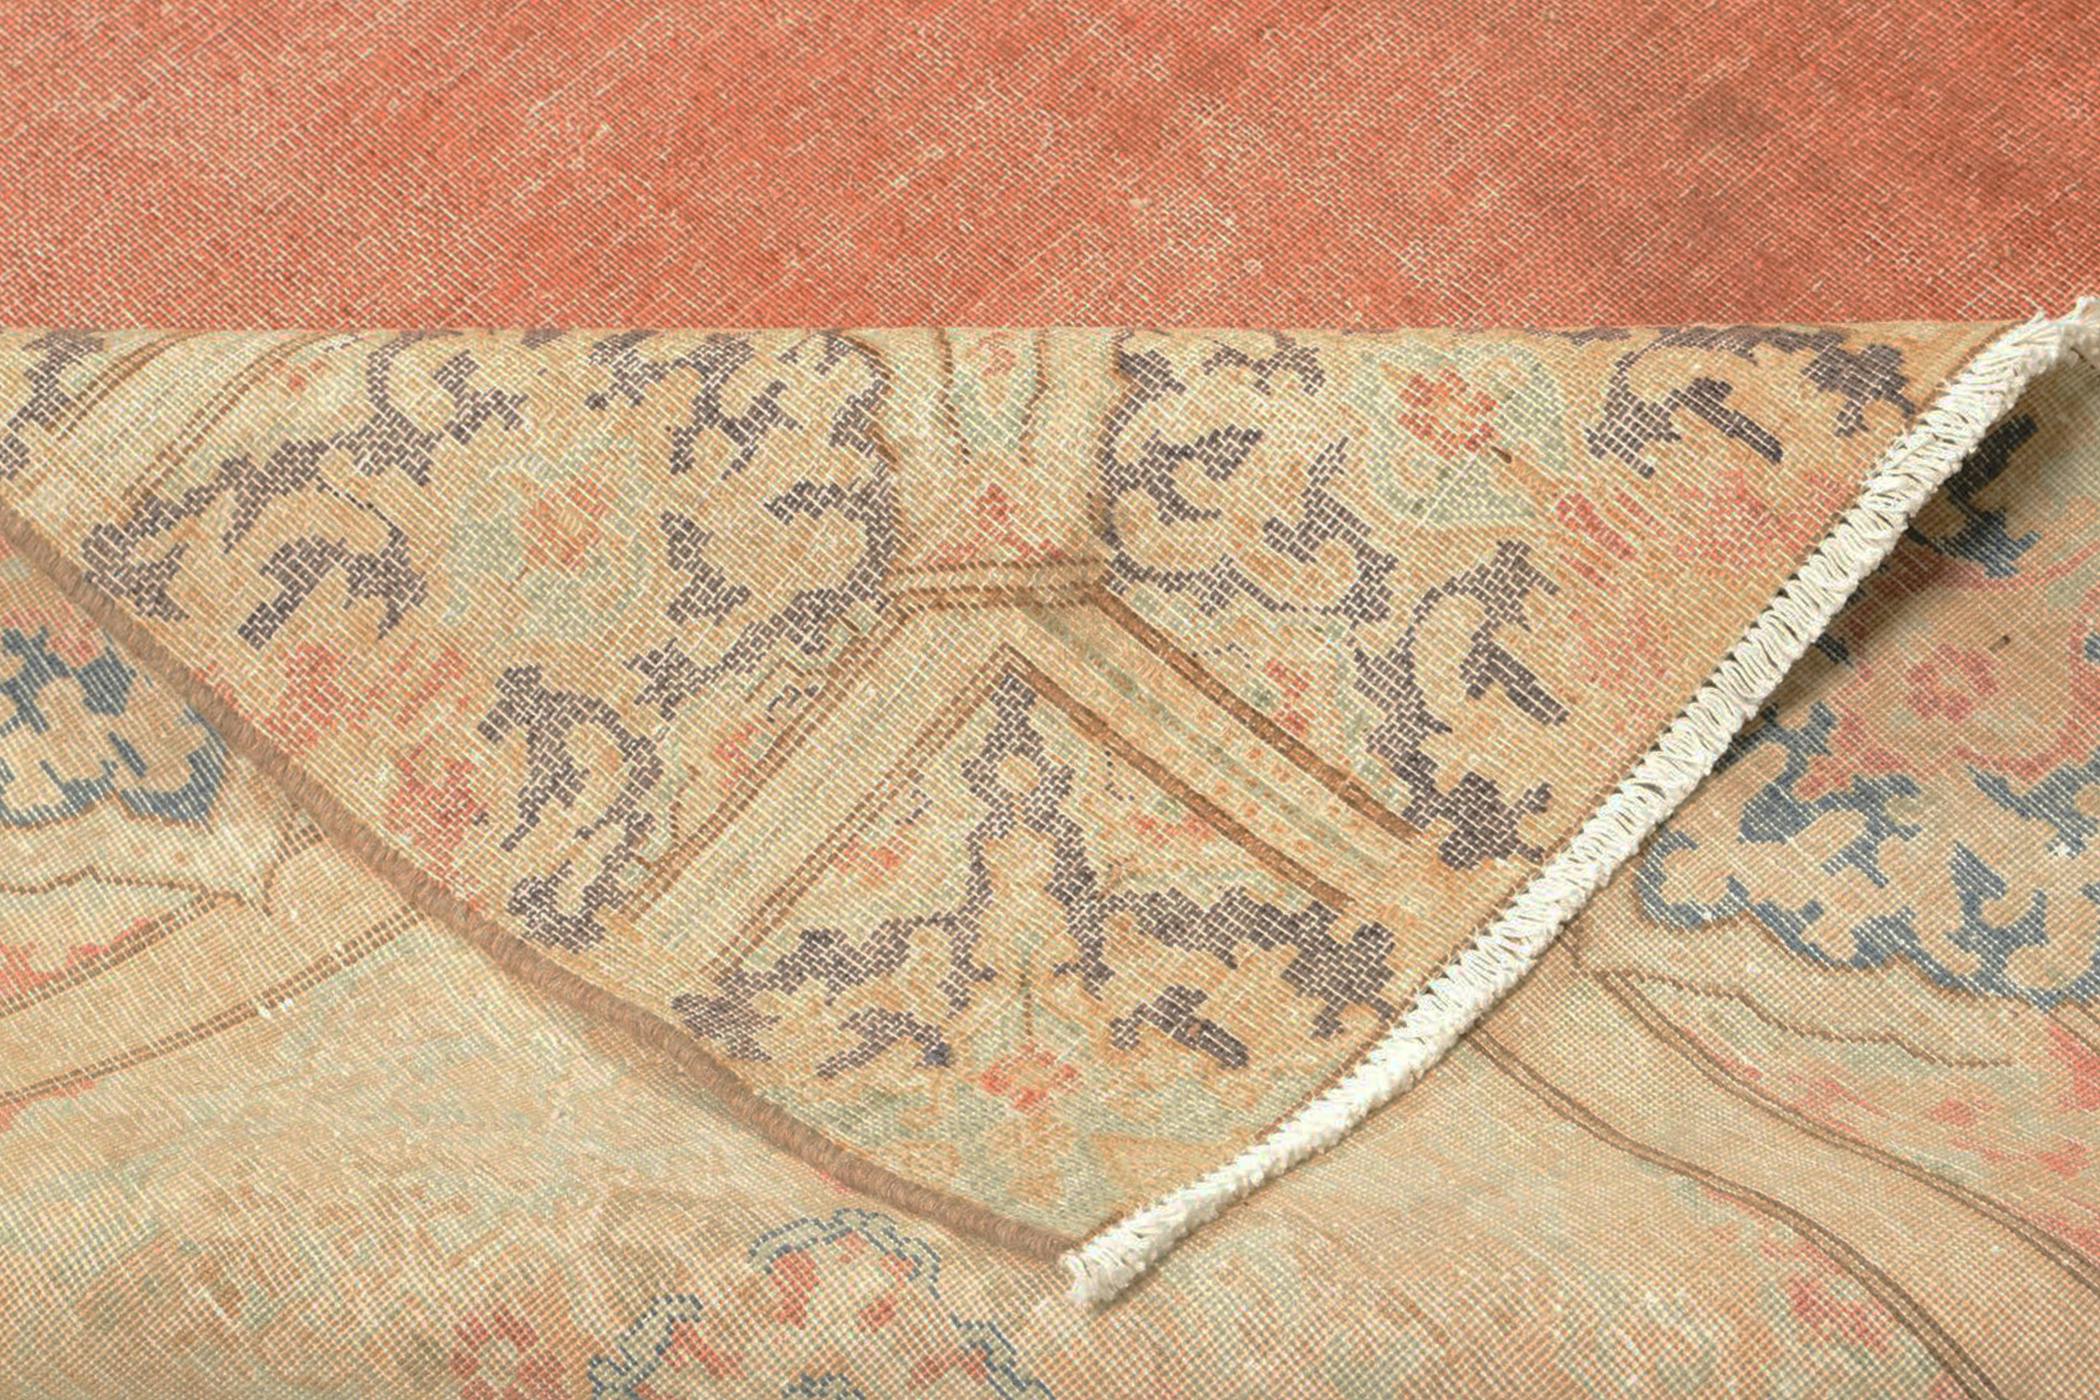 229x312cm bred persisk matta med handgjort mönster i gula och röda toner.